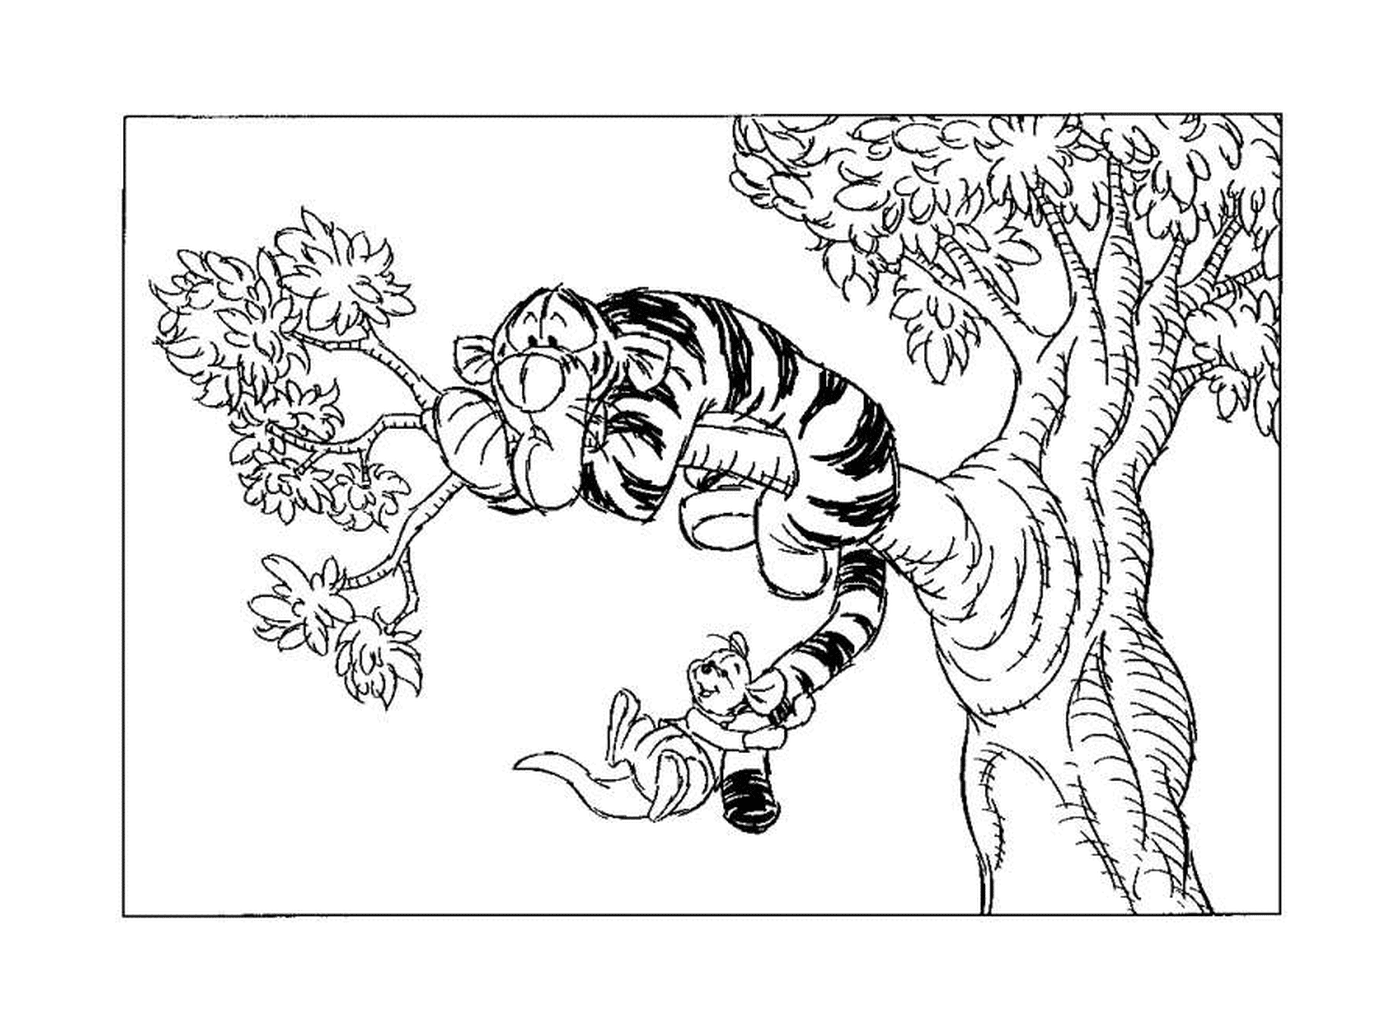 Tigrou a peur sur une branche